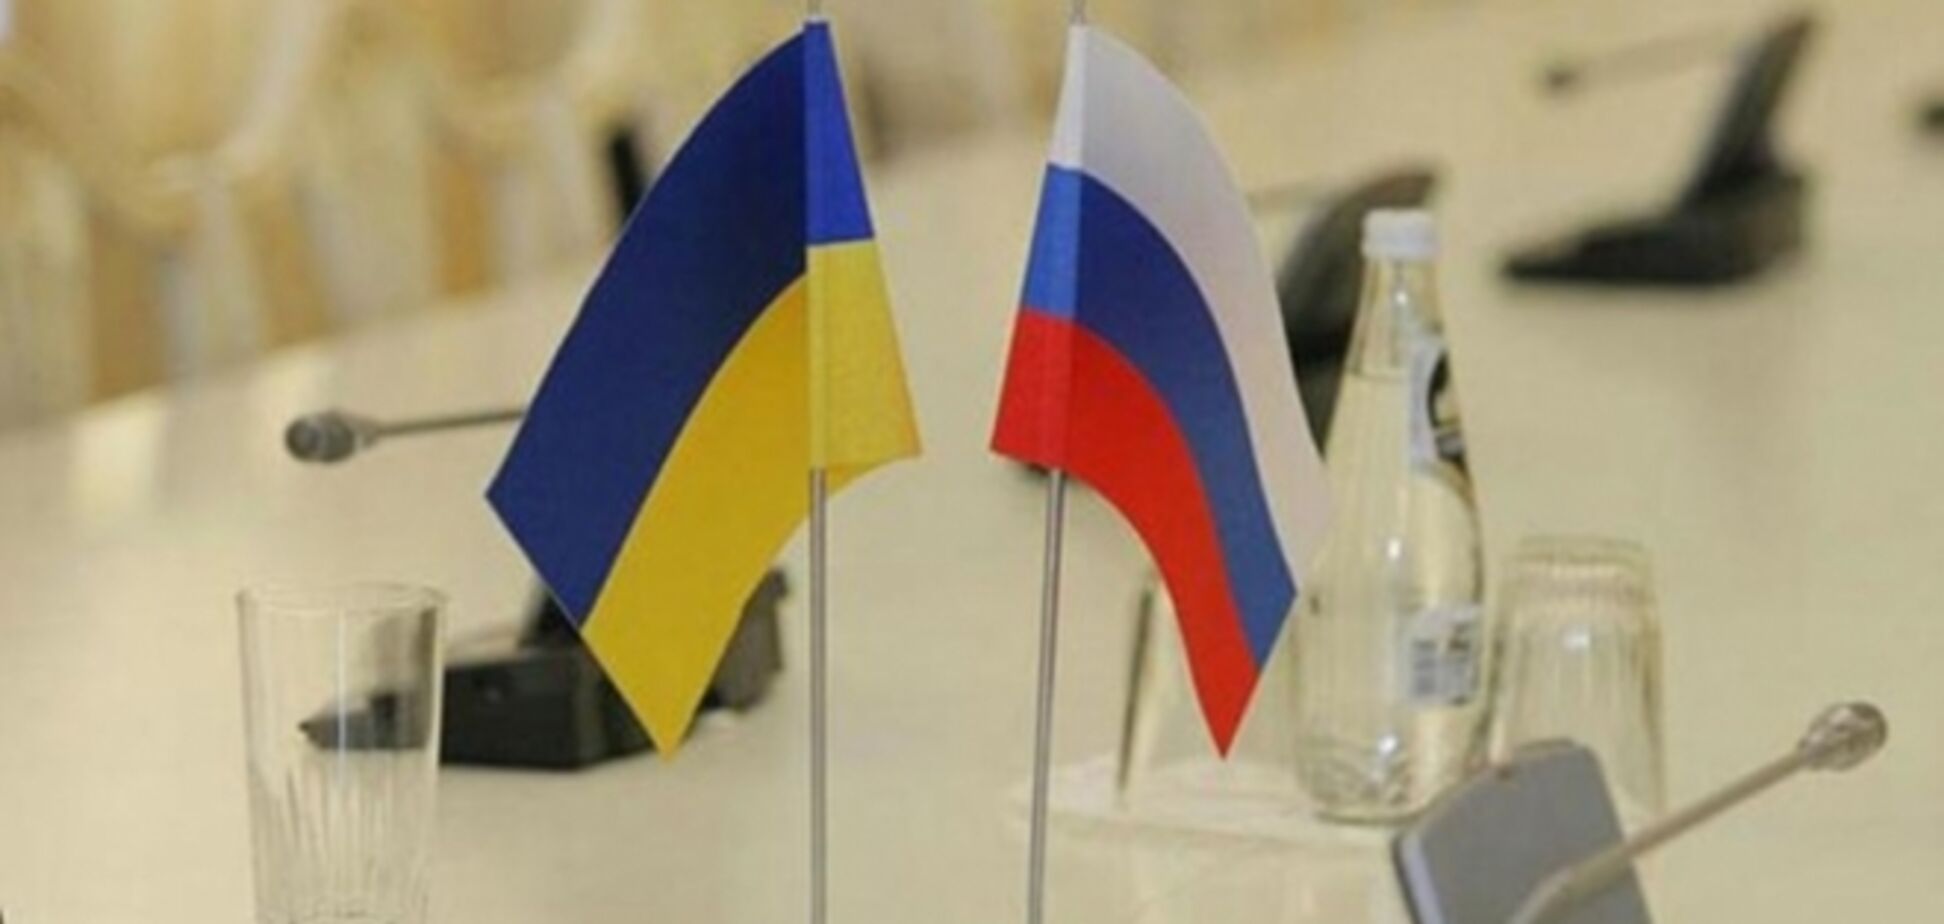 МЗС України: росіянам дозволено знати тільки те, що говорить 'великий брат'